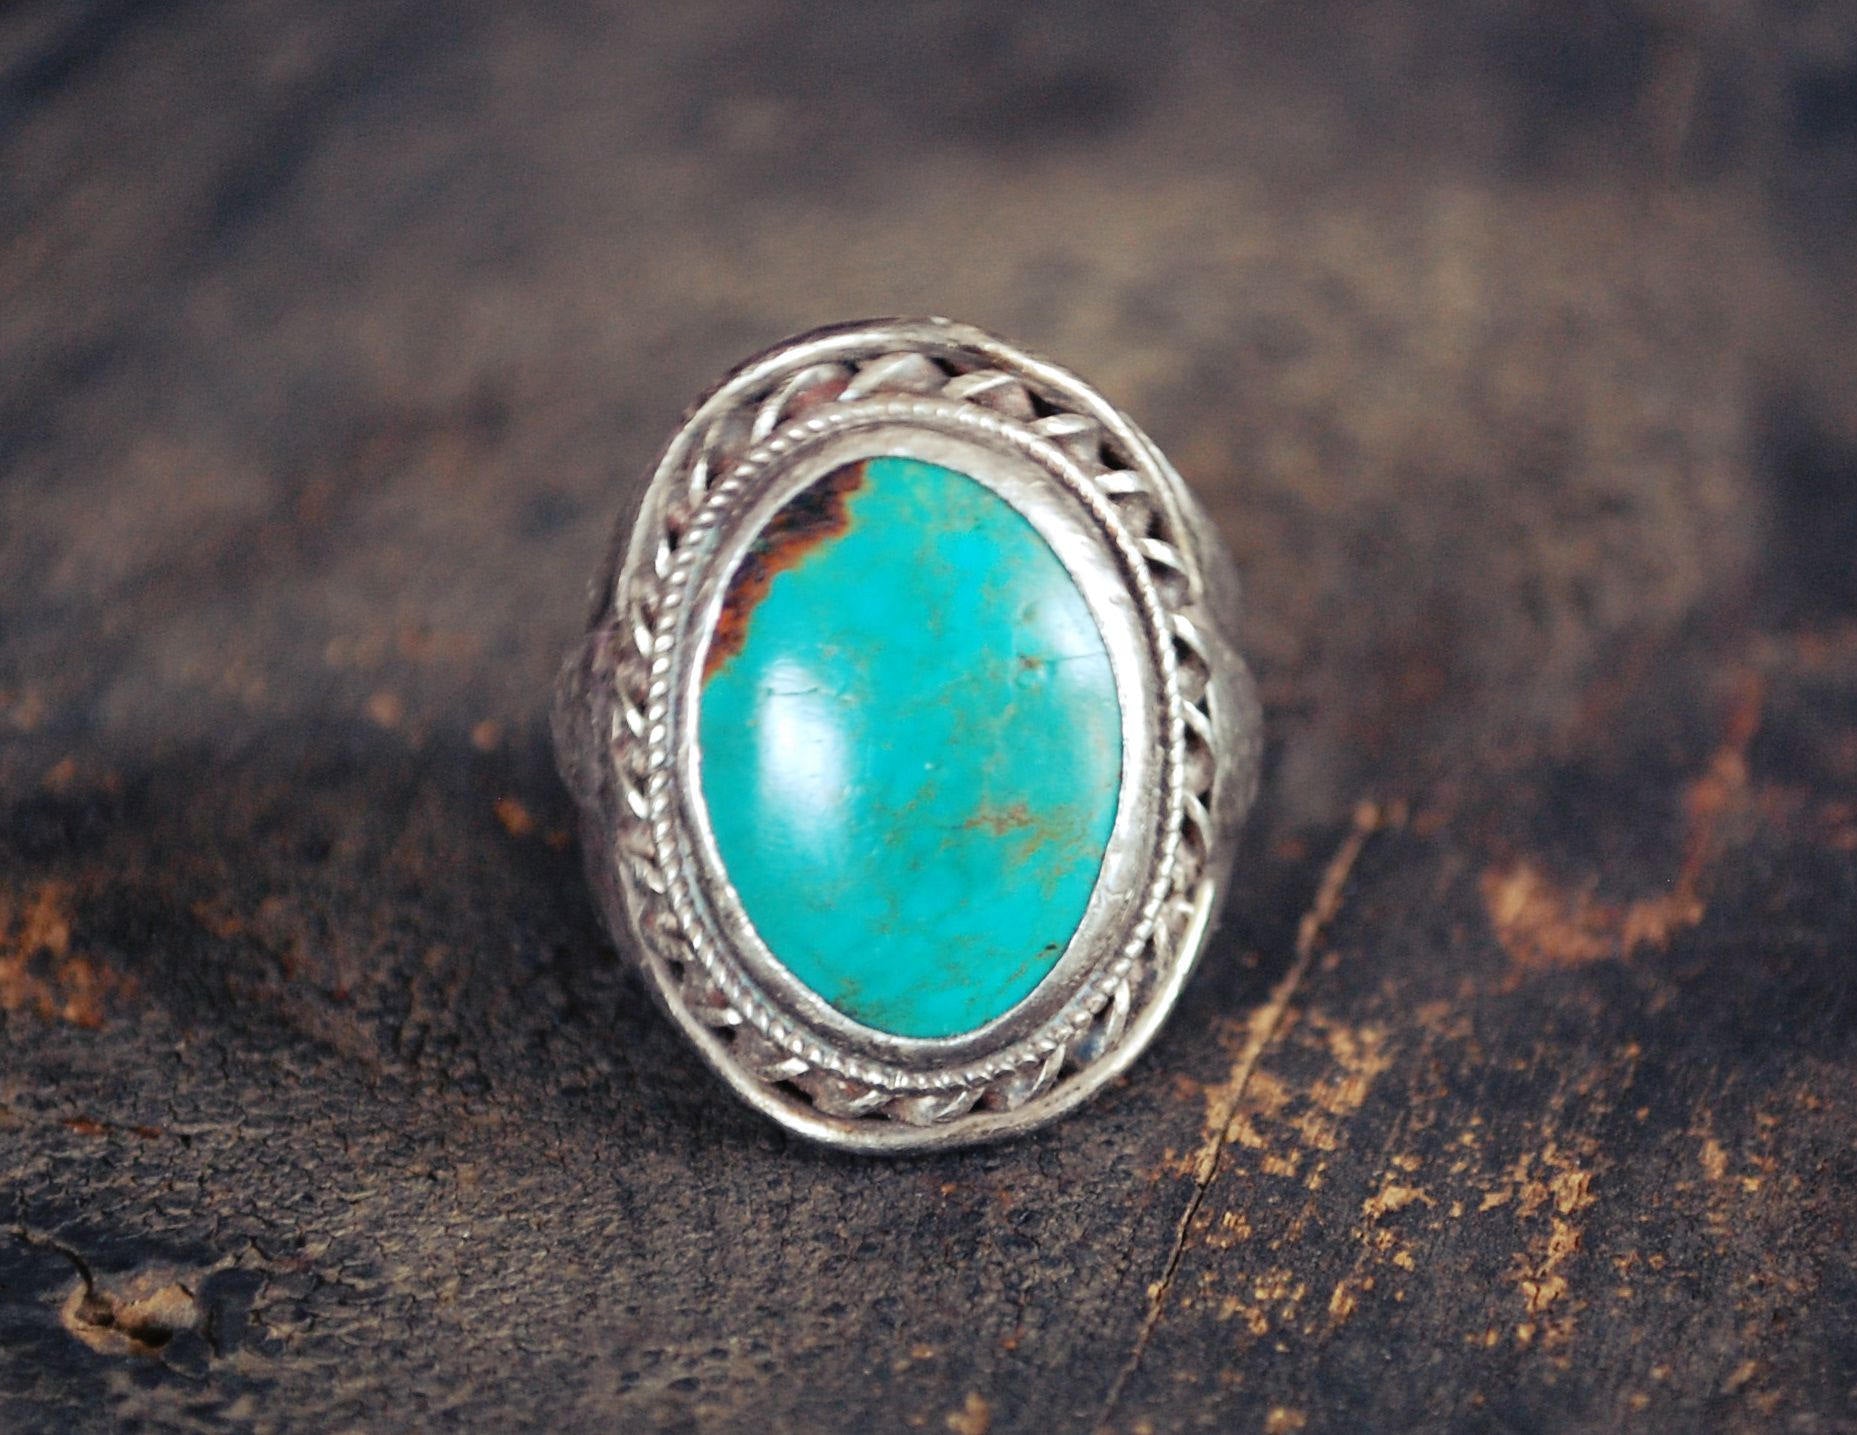 Ethnic Turquoise Ring - Size 9.5 - Turquoise Ring